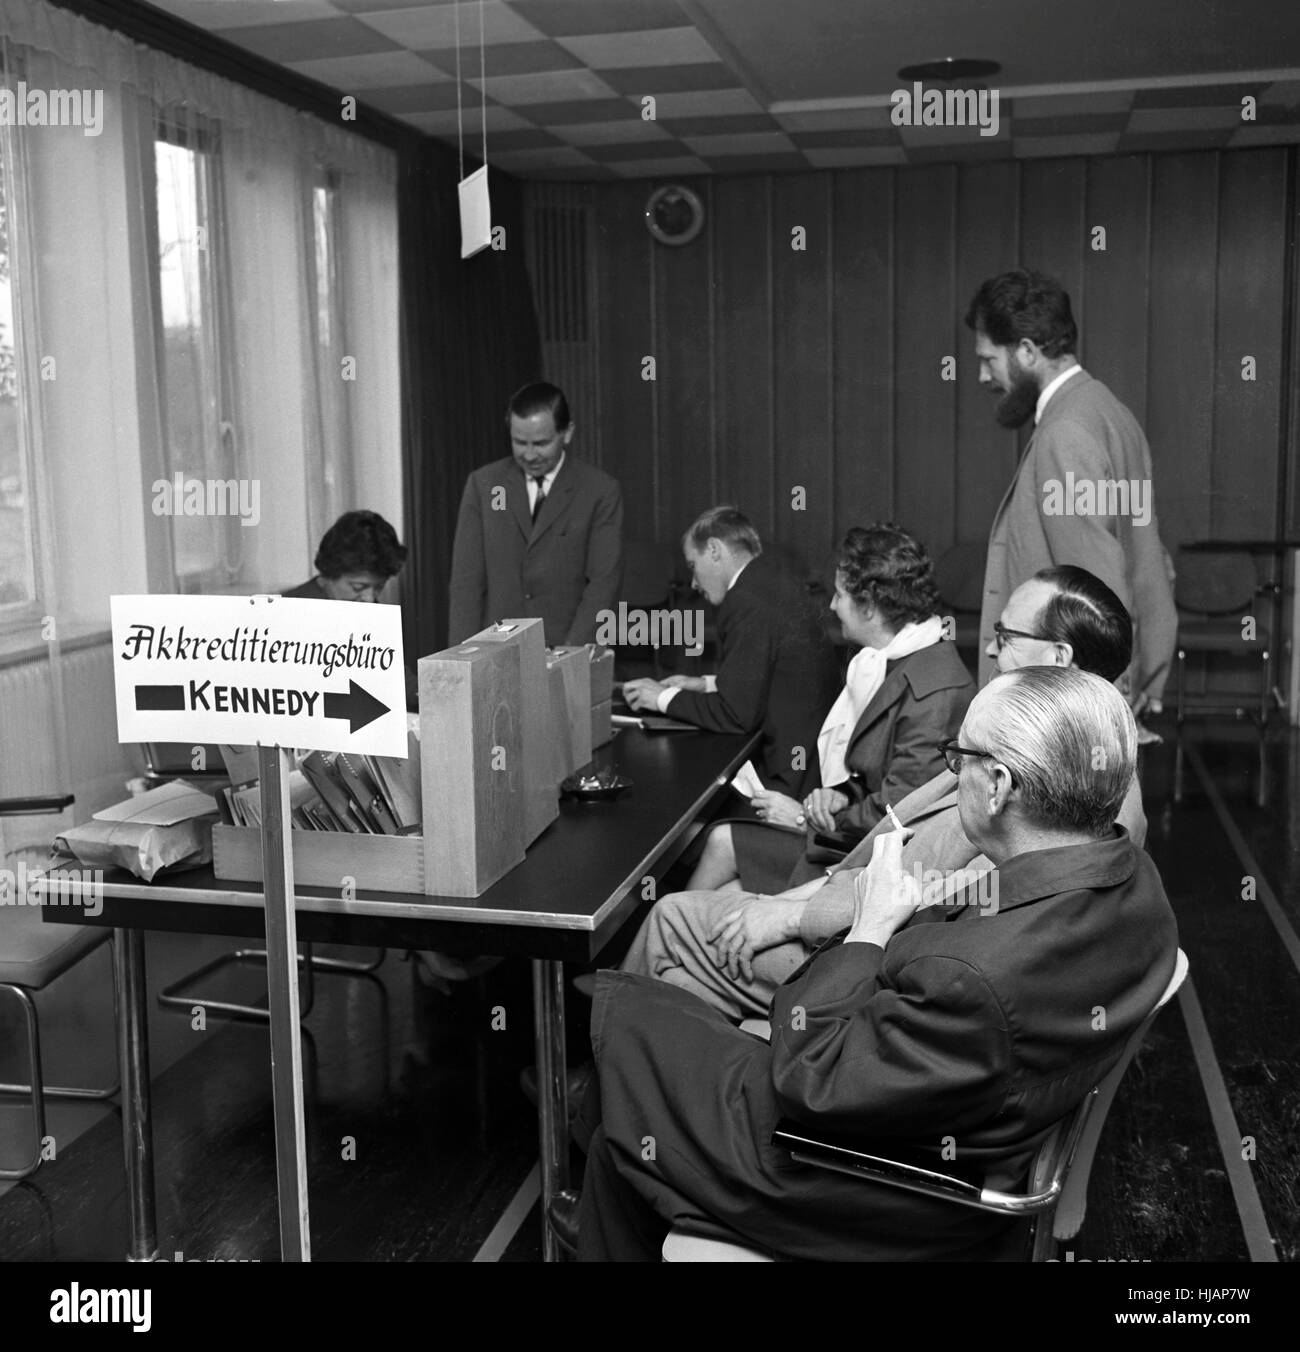 I giornalisti sono in attesa di ricevere gli abbonamenti speciali e le linee guida per l'imminente visita del presidente statunitense John Fitzgerald Kennedy, il 20 luglio 1963, presso l' Ufficio di accreditamento Kennedy" presso l'ufficio stampa e informazione del governo federale di Bonn. Foto Stock